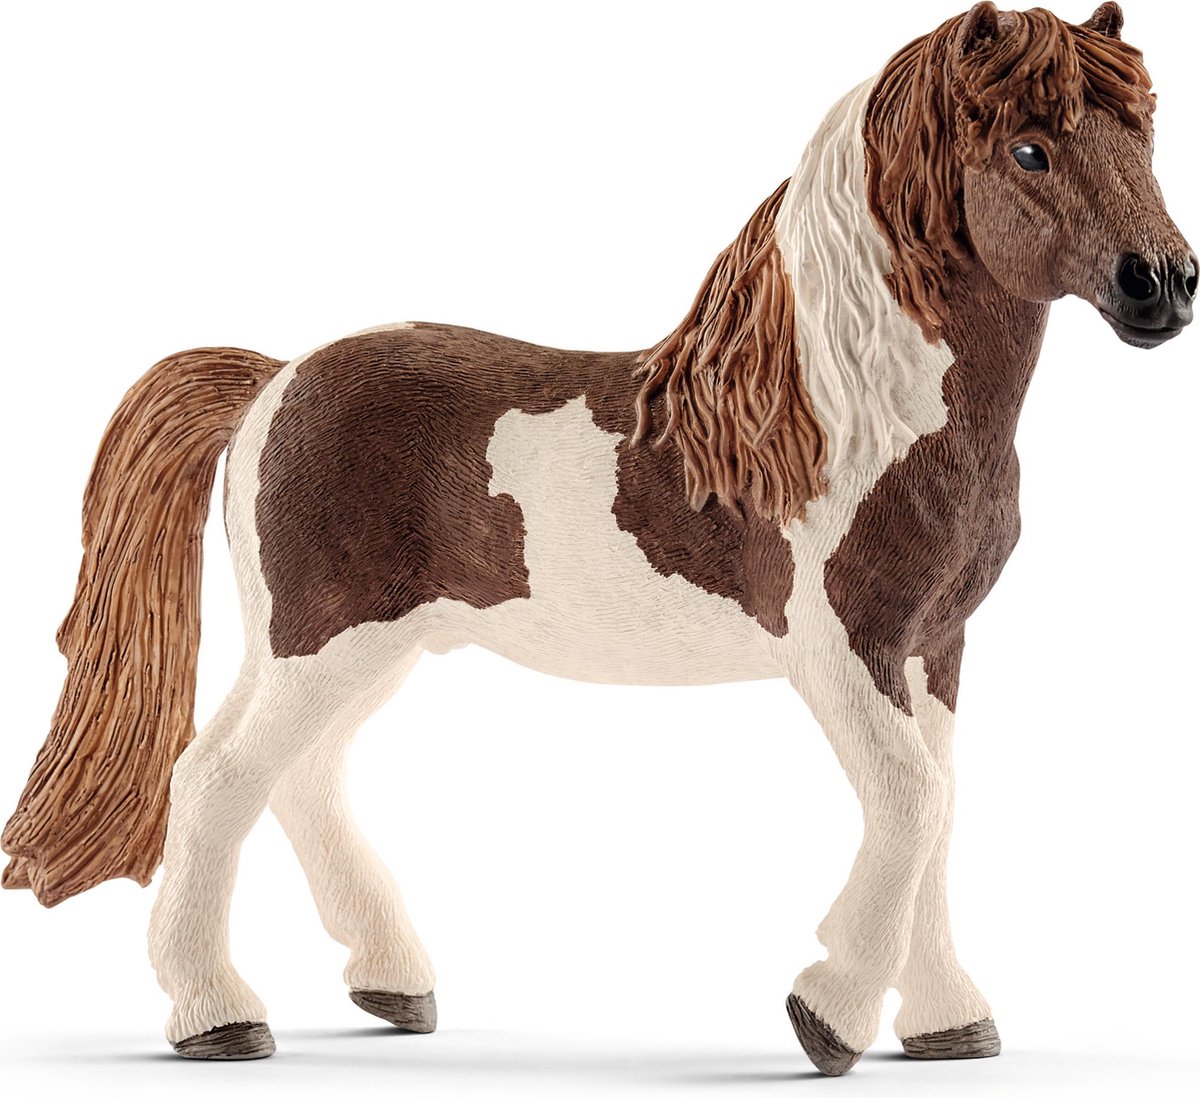 Schleich Icelandic Pony Stallion 13815 - Horse Play Figure - Horse Club - 11.8 X 3.5 X 9.4 Cm - Schleich